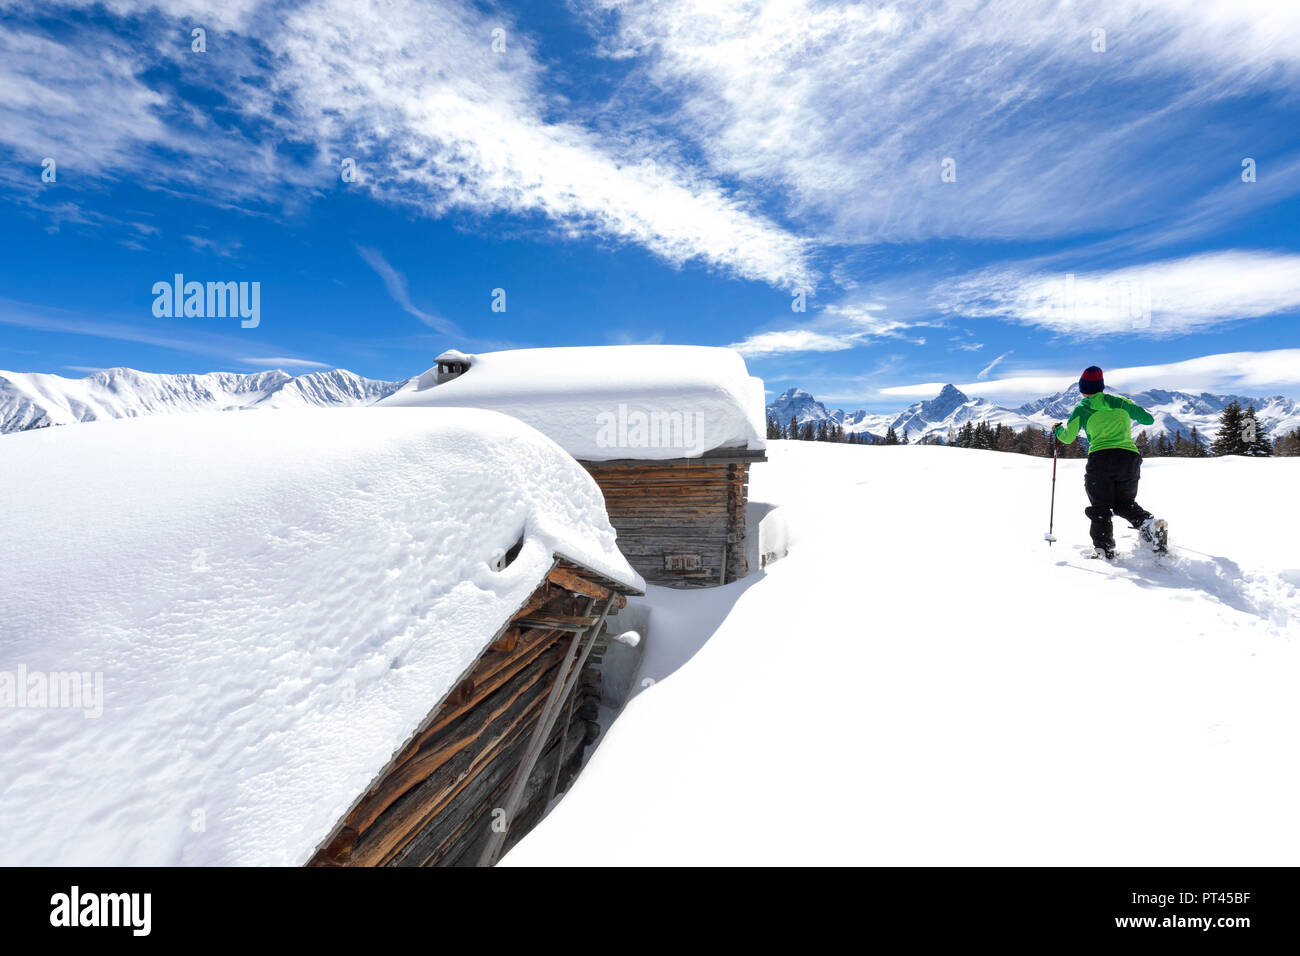 A trekker walks in the fresh snow with snowshoes near typical alpine huts, Wiesner Alp, Davos Wiesen, Landwasser Valley, Albula Valley, District of Prattigau / Davos, Canton of Graubünden, Switzerland, Europe, Stock Photo